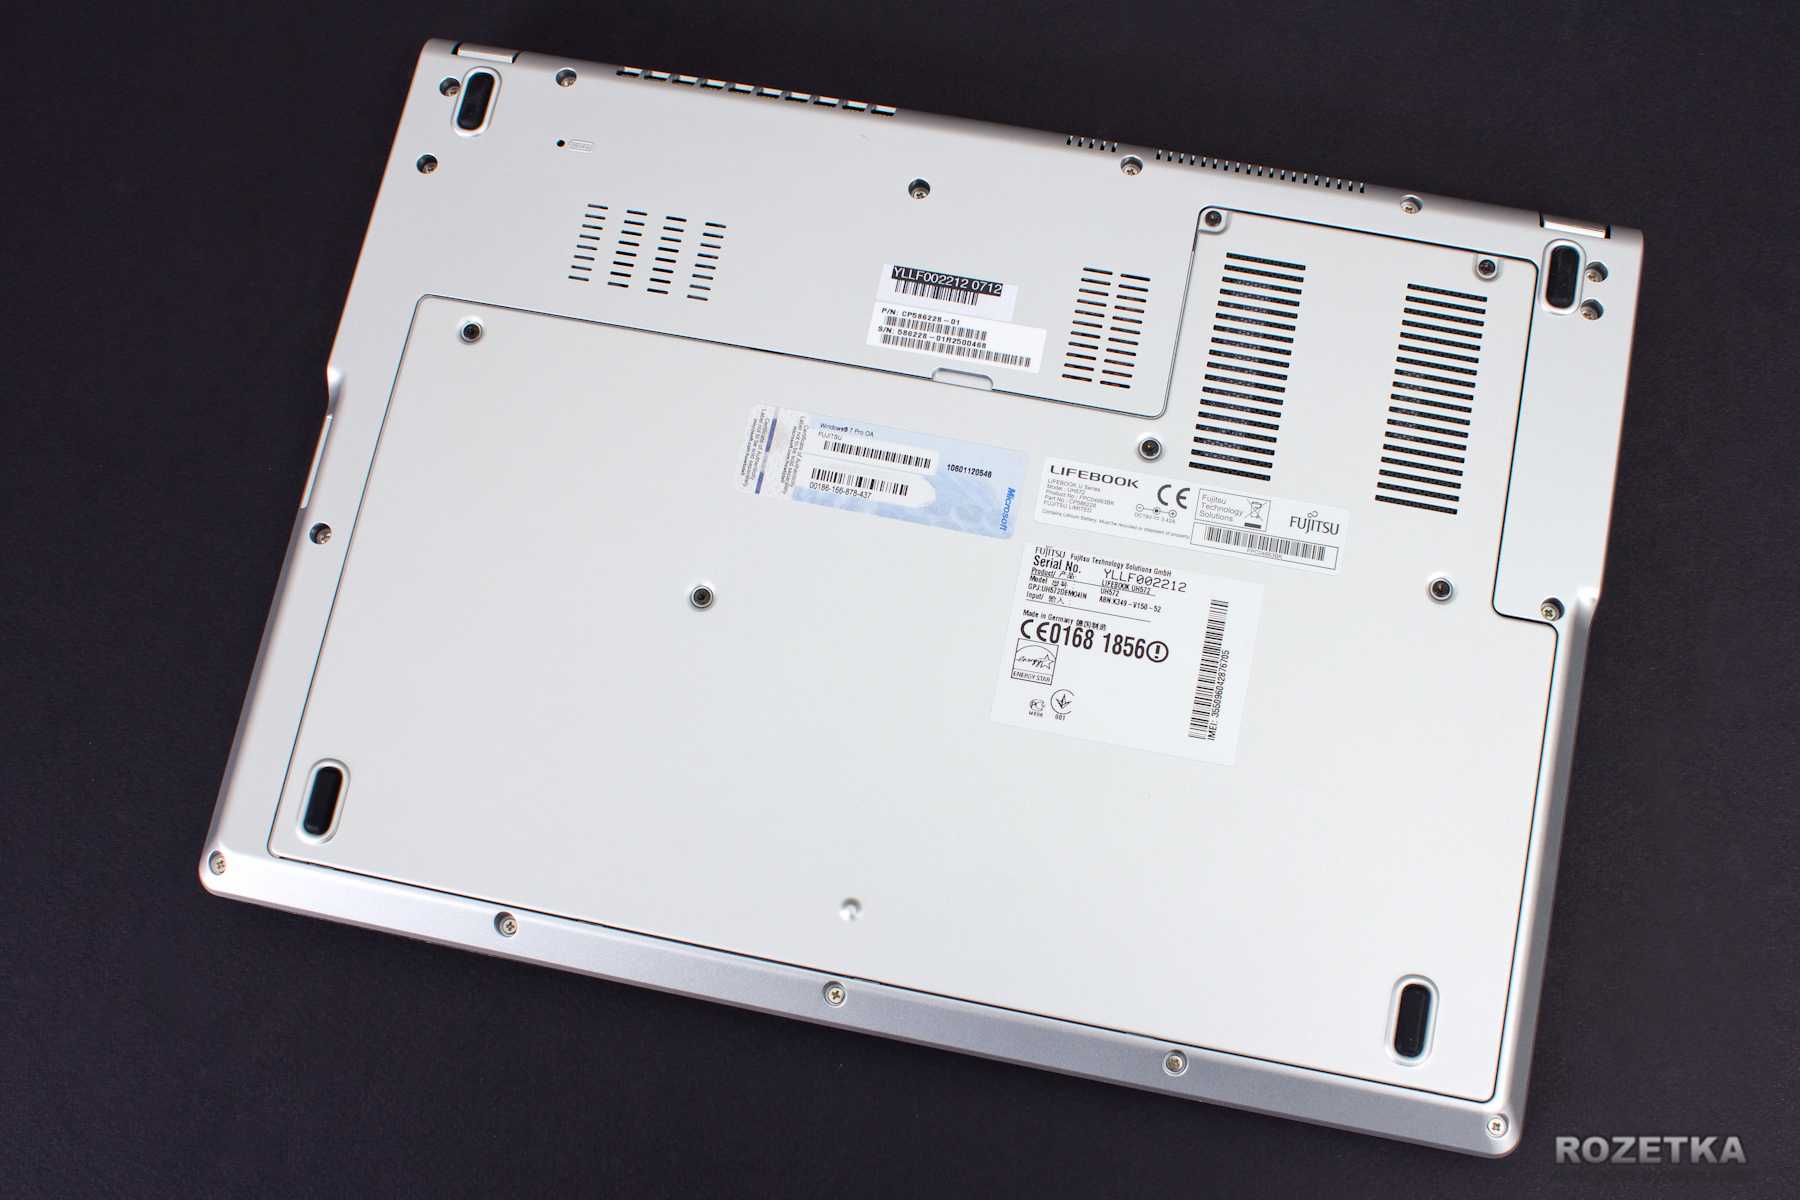 Ноутбук Fujitsu LifeBook UH572 (UH572MPZD2RU) - подробные характеристики обзоры видео фото Цены в интернет-магазинах где можно купить ноутбук Fujitsu LifeBook UH572 (UH572MPZD2RU)